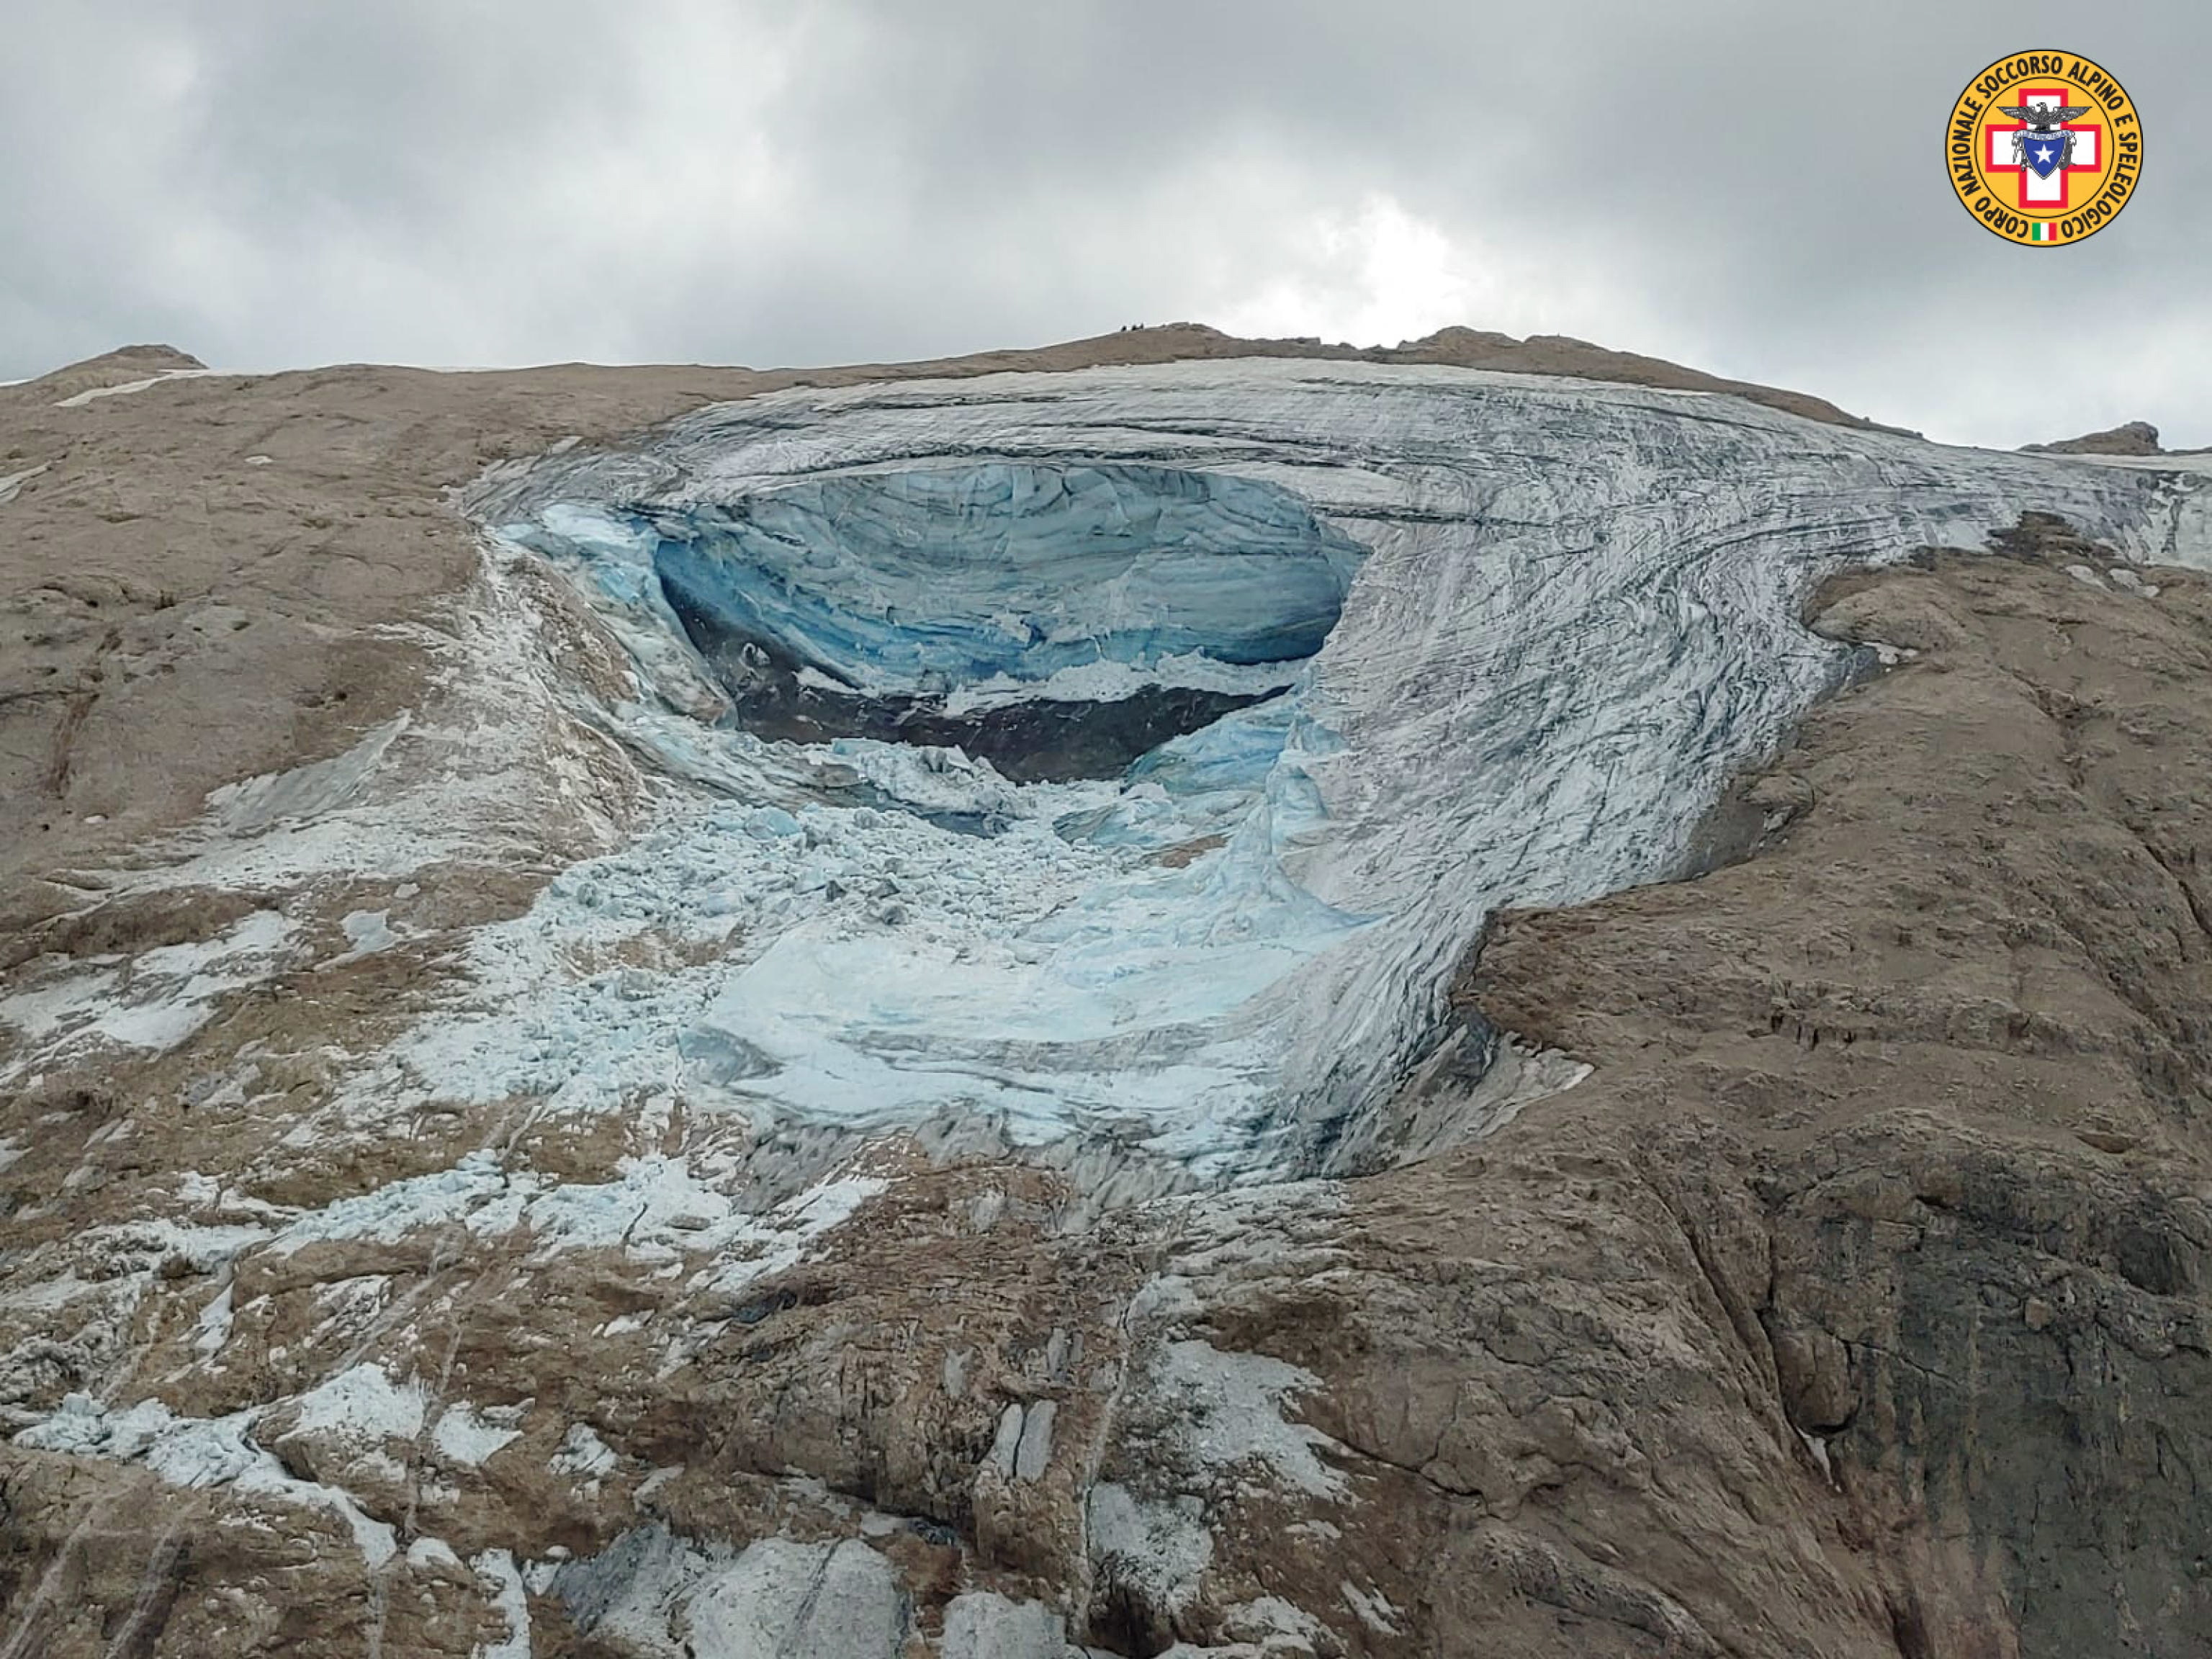 Buscan a al menos 20 personas desaparecidas tras el desprendimiento del glaciar de la Marmolada: «Ha sido una carnicería»